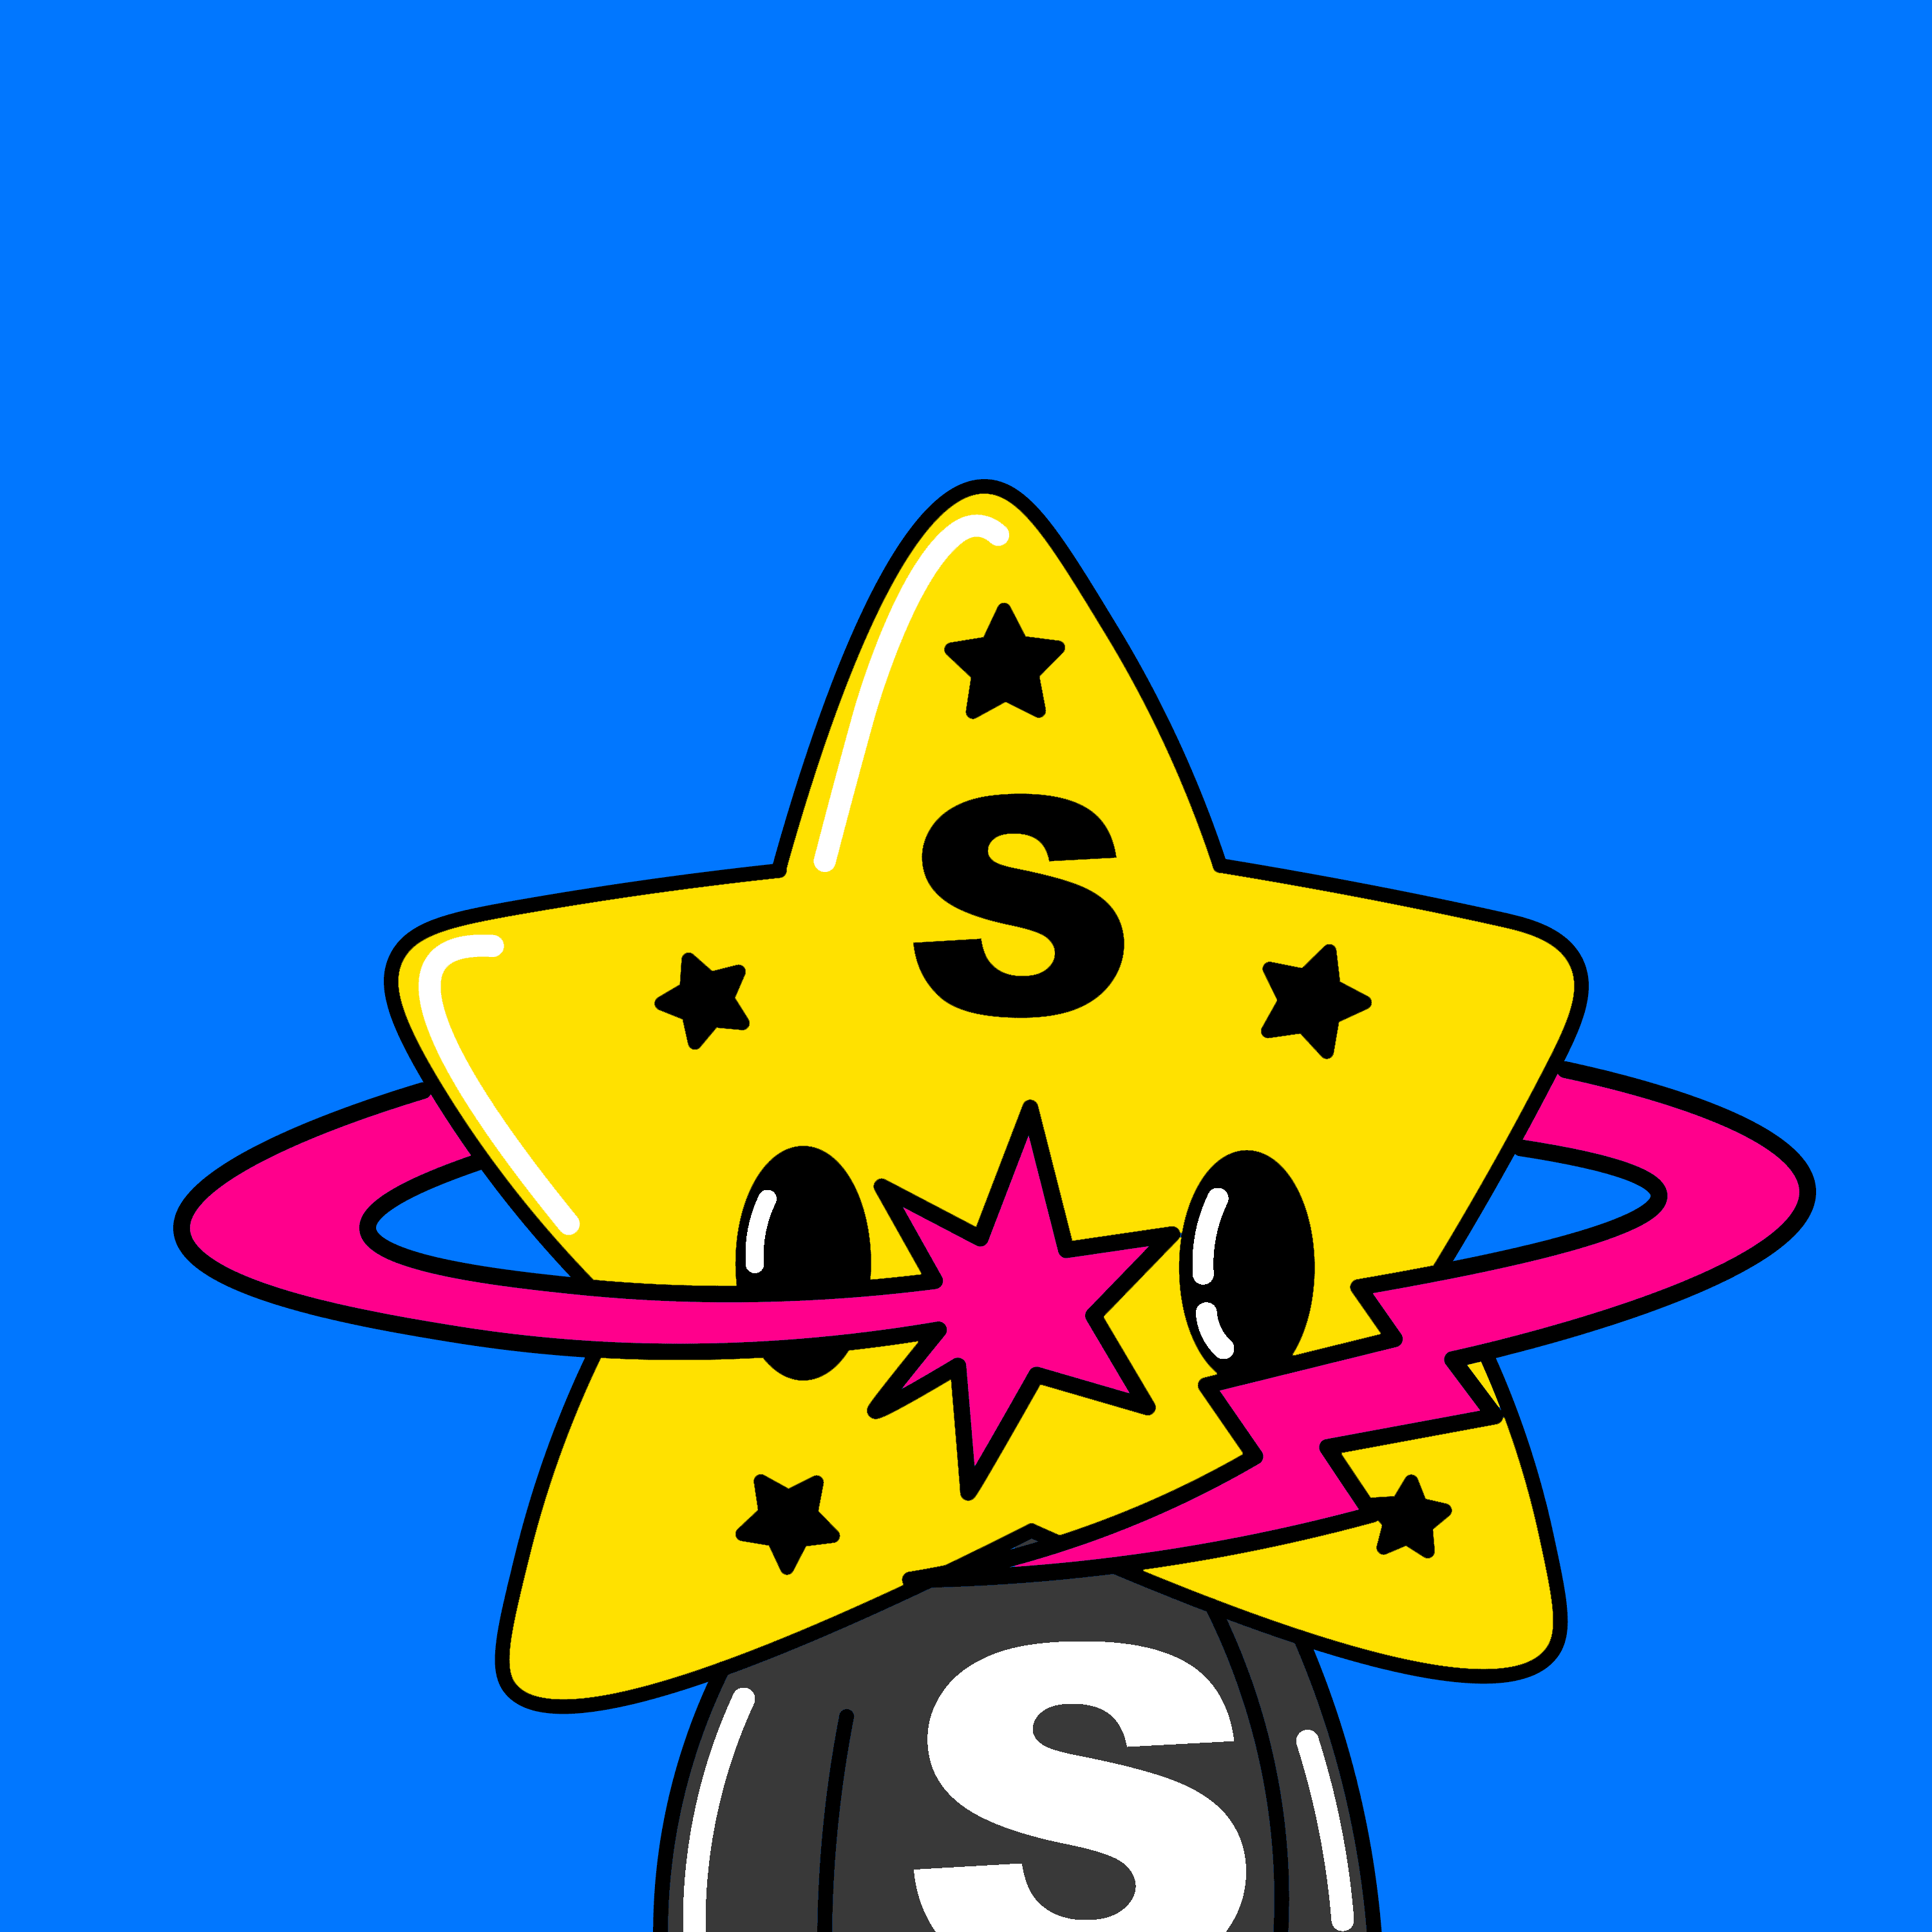 StarBoy #007